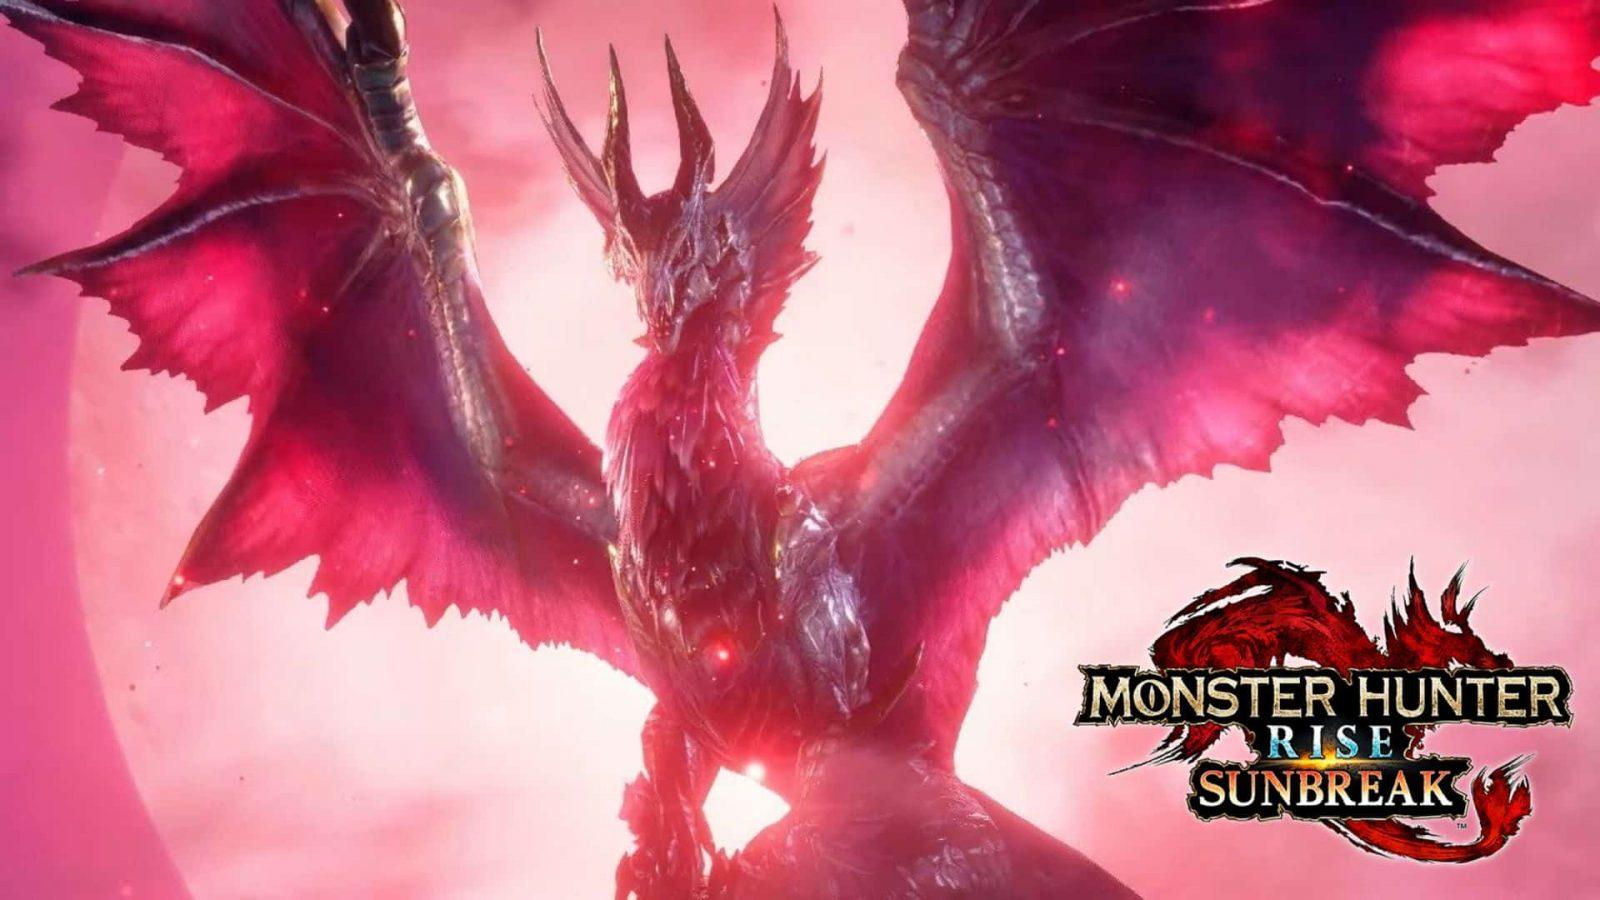 dragon in monster hunter rise sunbreak trailer